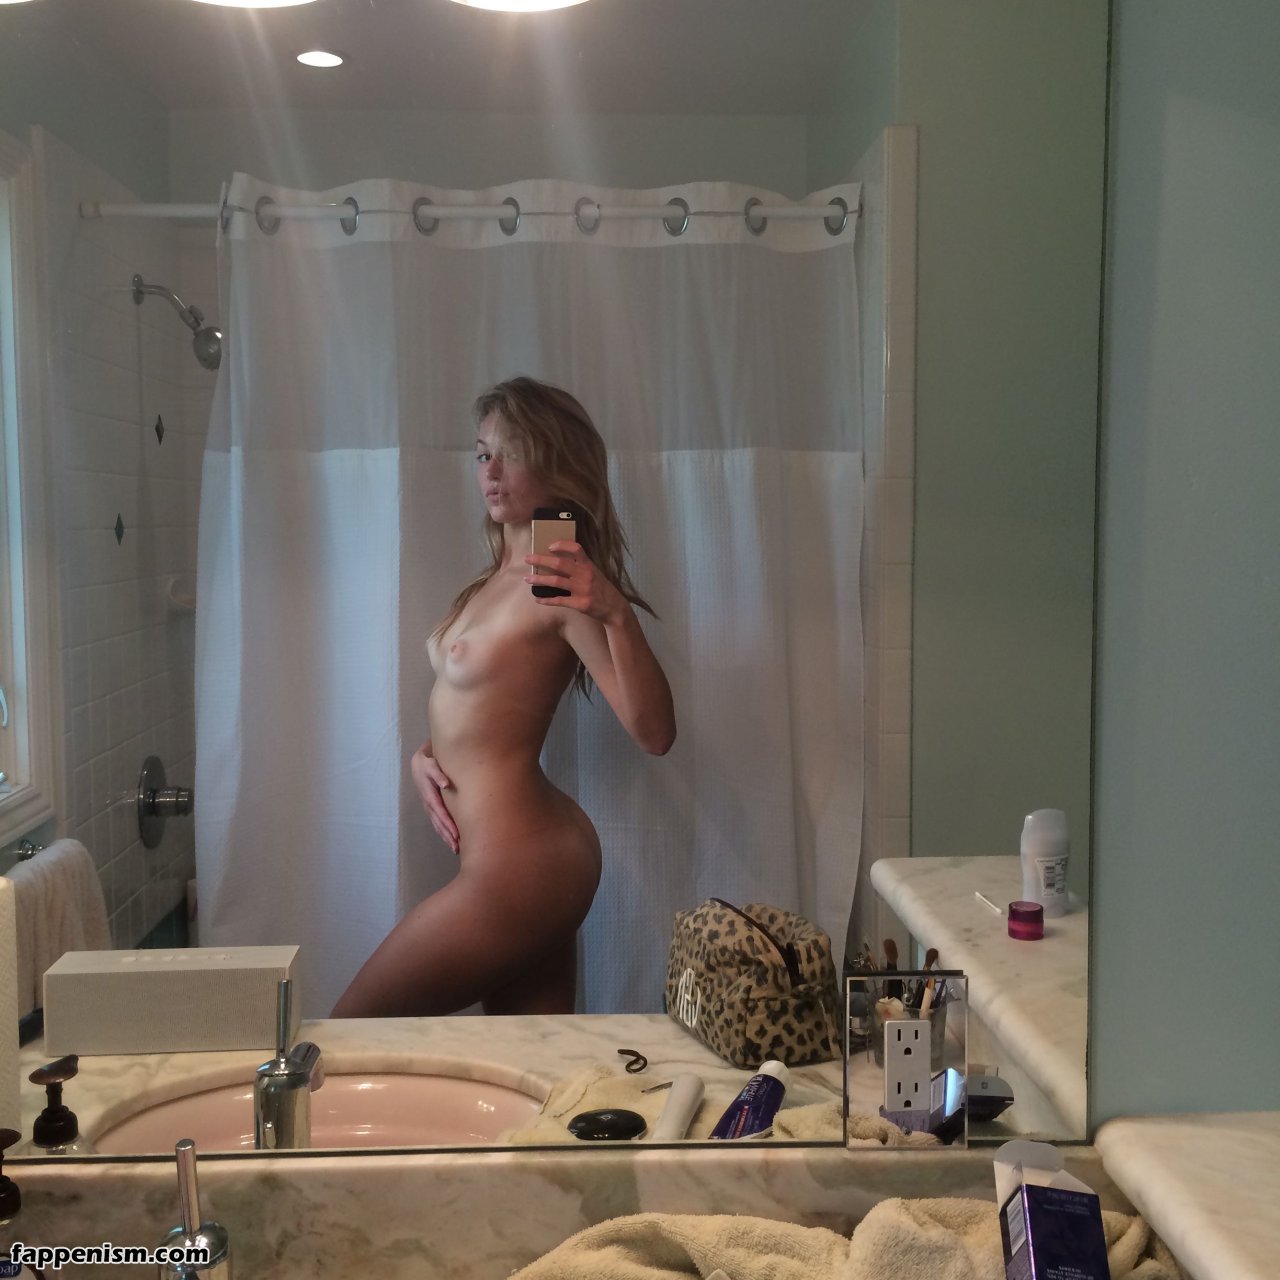 Lili simmons leaked nudes